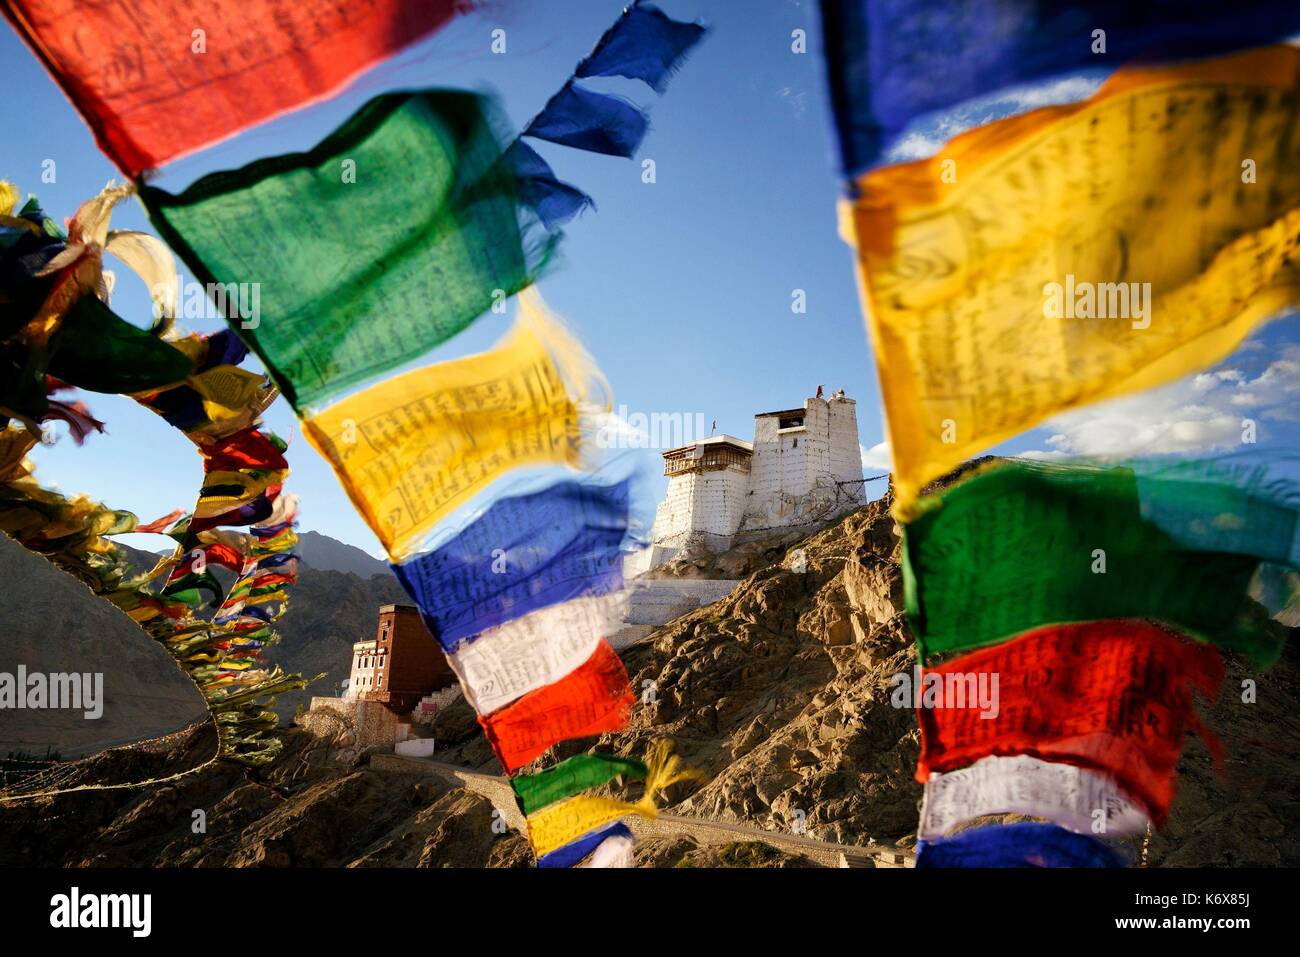 India, dello Stato del Jammu e Kashmir, Himalaya, Ladakh, Indus Valle, Leh, monastero buddista di Namgyal Tsemo e bandiere di preghiera Foto Stock